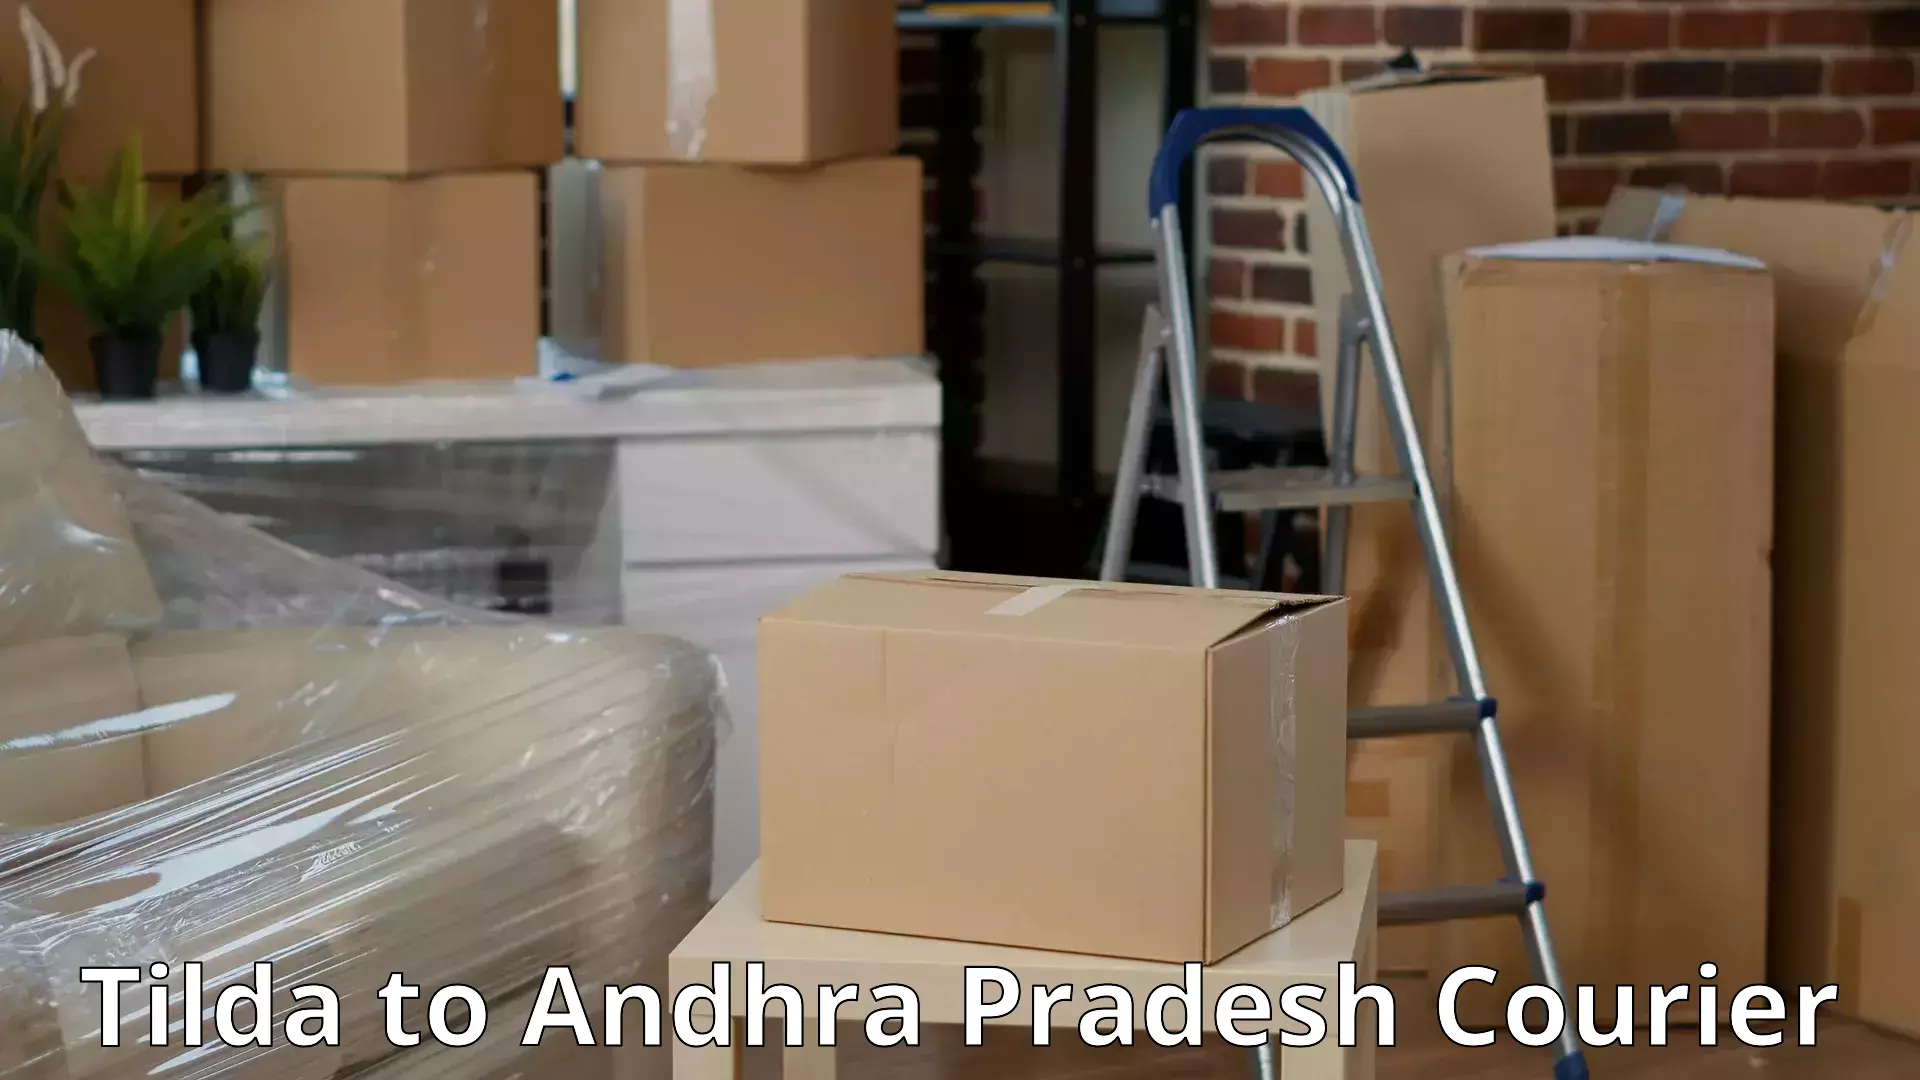 High-quality moving services Tilda to Andhra Pradesh